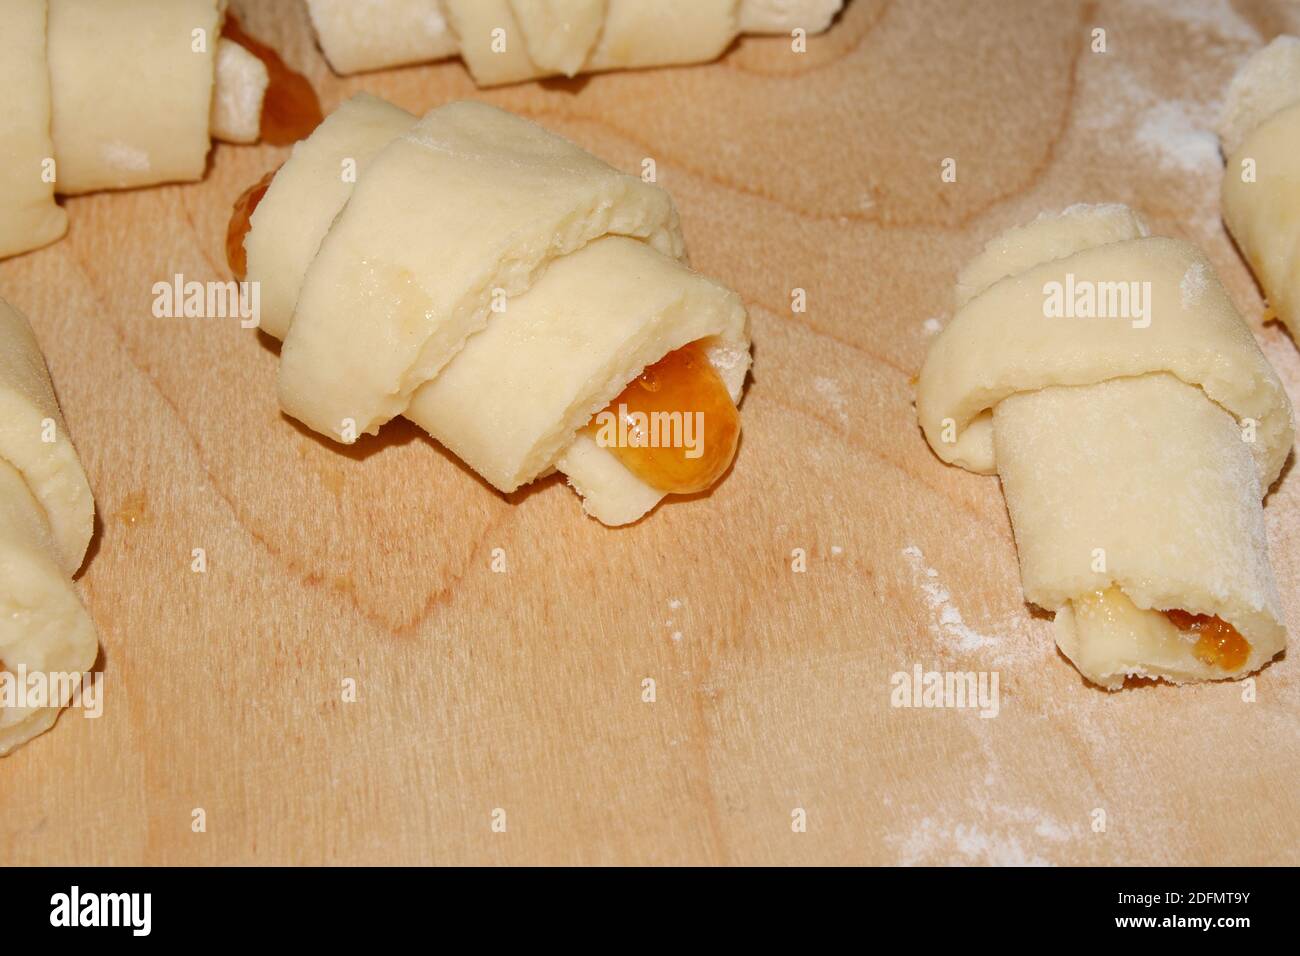 Kochen hausgemachte Brötchen mit Marmelade. Vorbereitet zum Backen von verdrehten Brötchen auf einem Holzbrett mit Mehl. Selektiver Fokus. Stockfoto